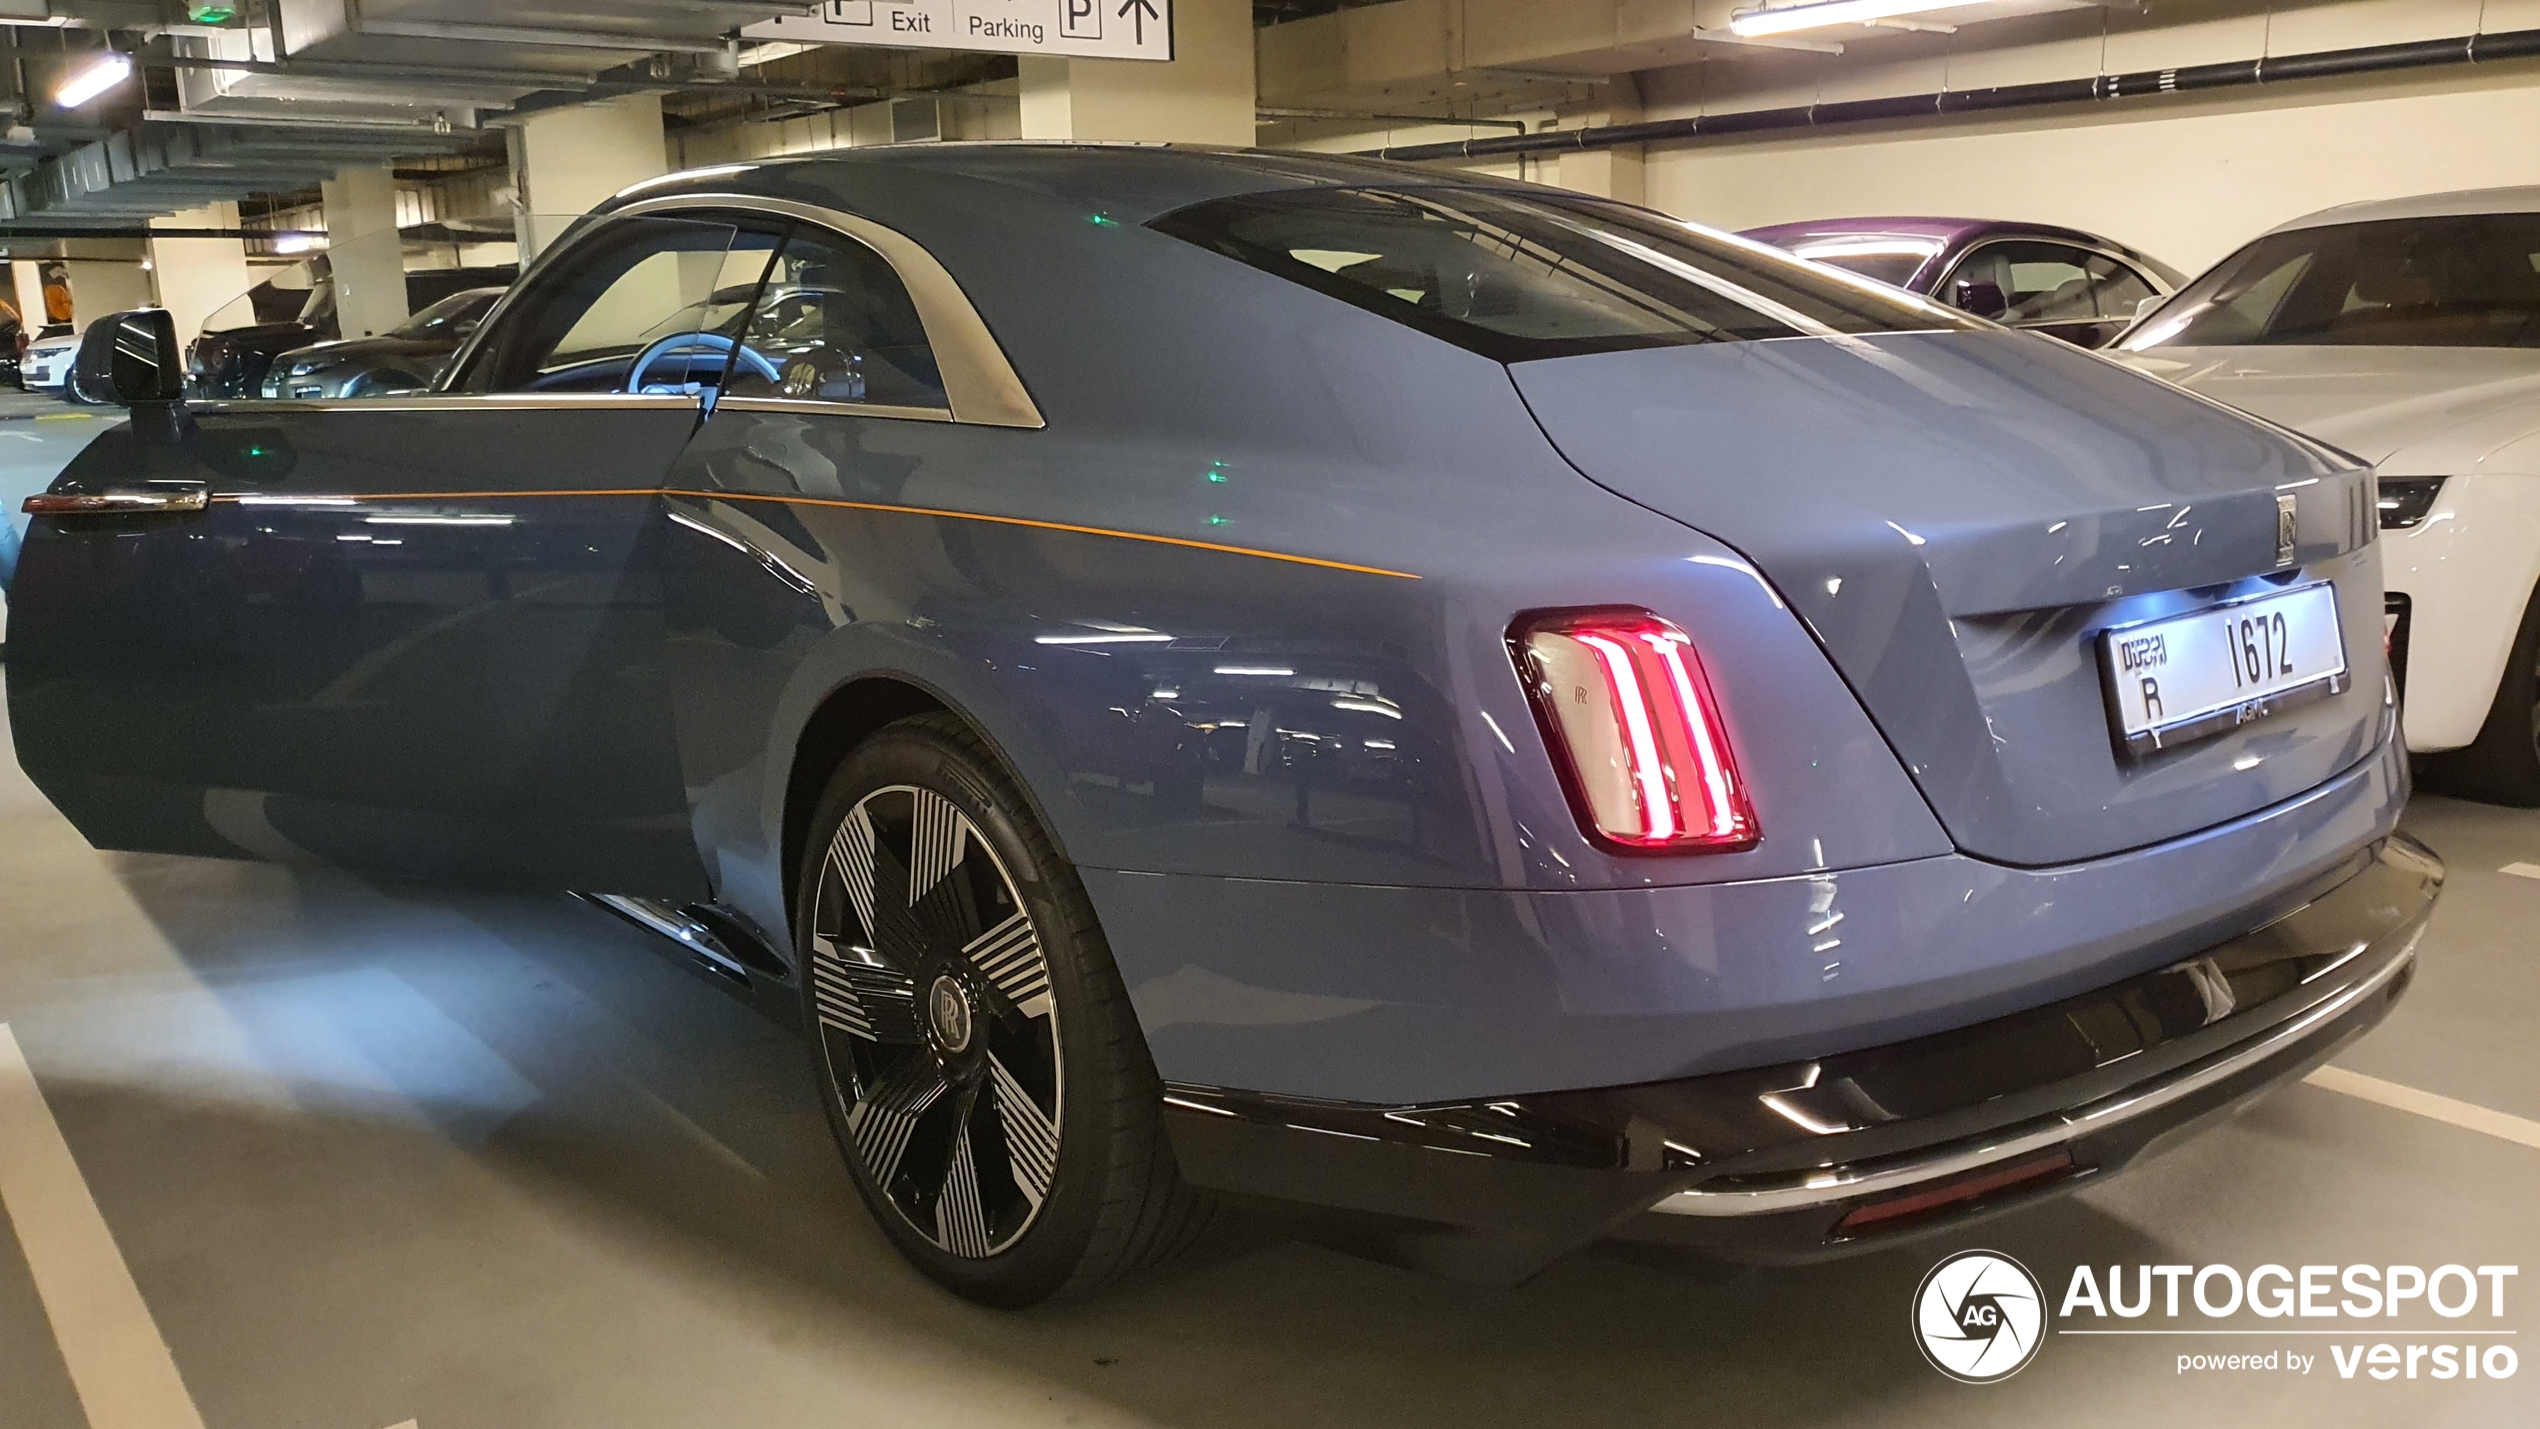 Wordt de Rolls-Royce Spectre populair in Dubai?